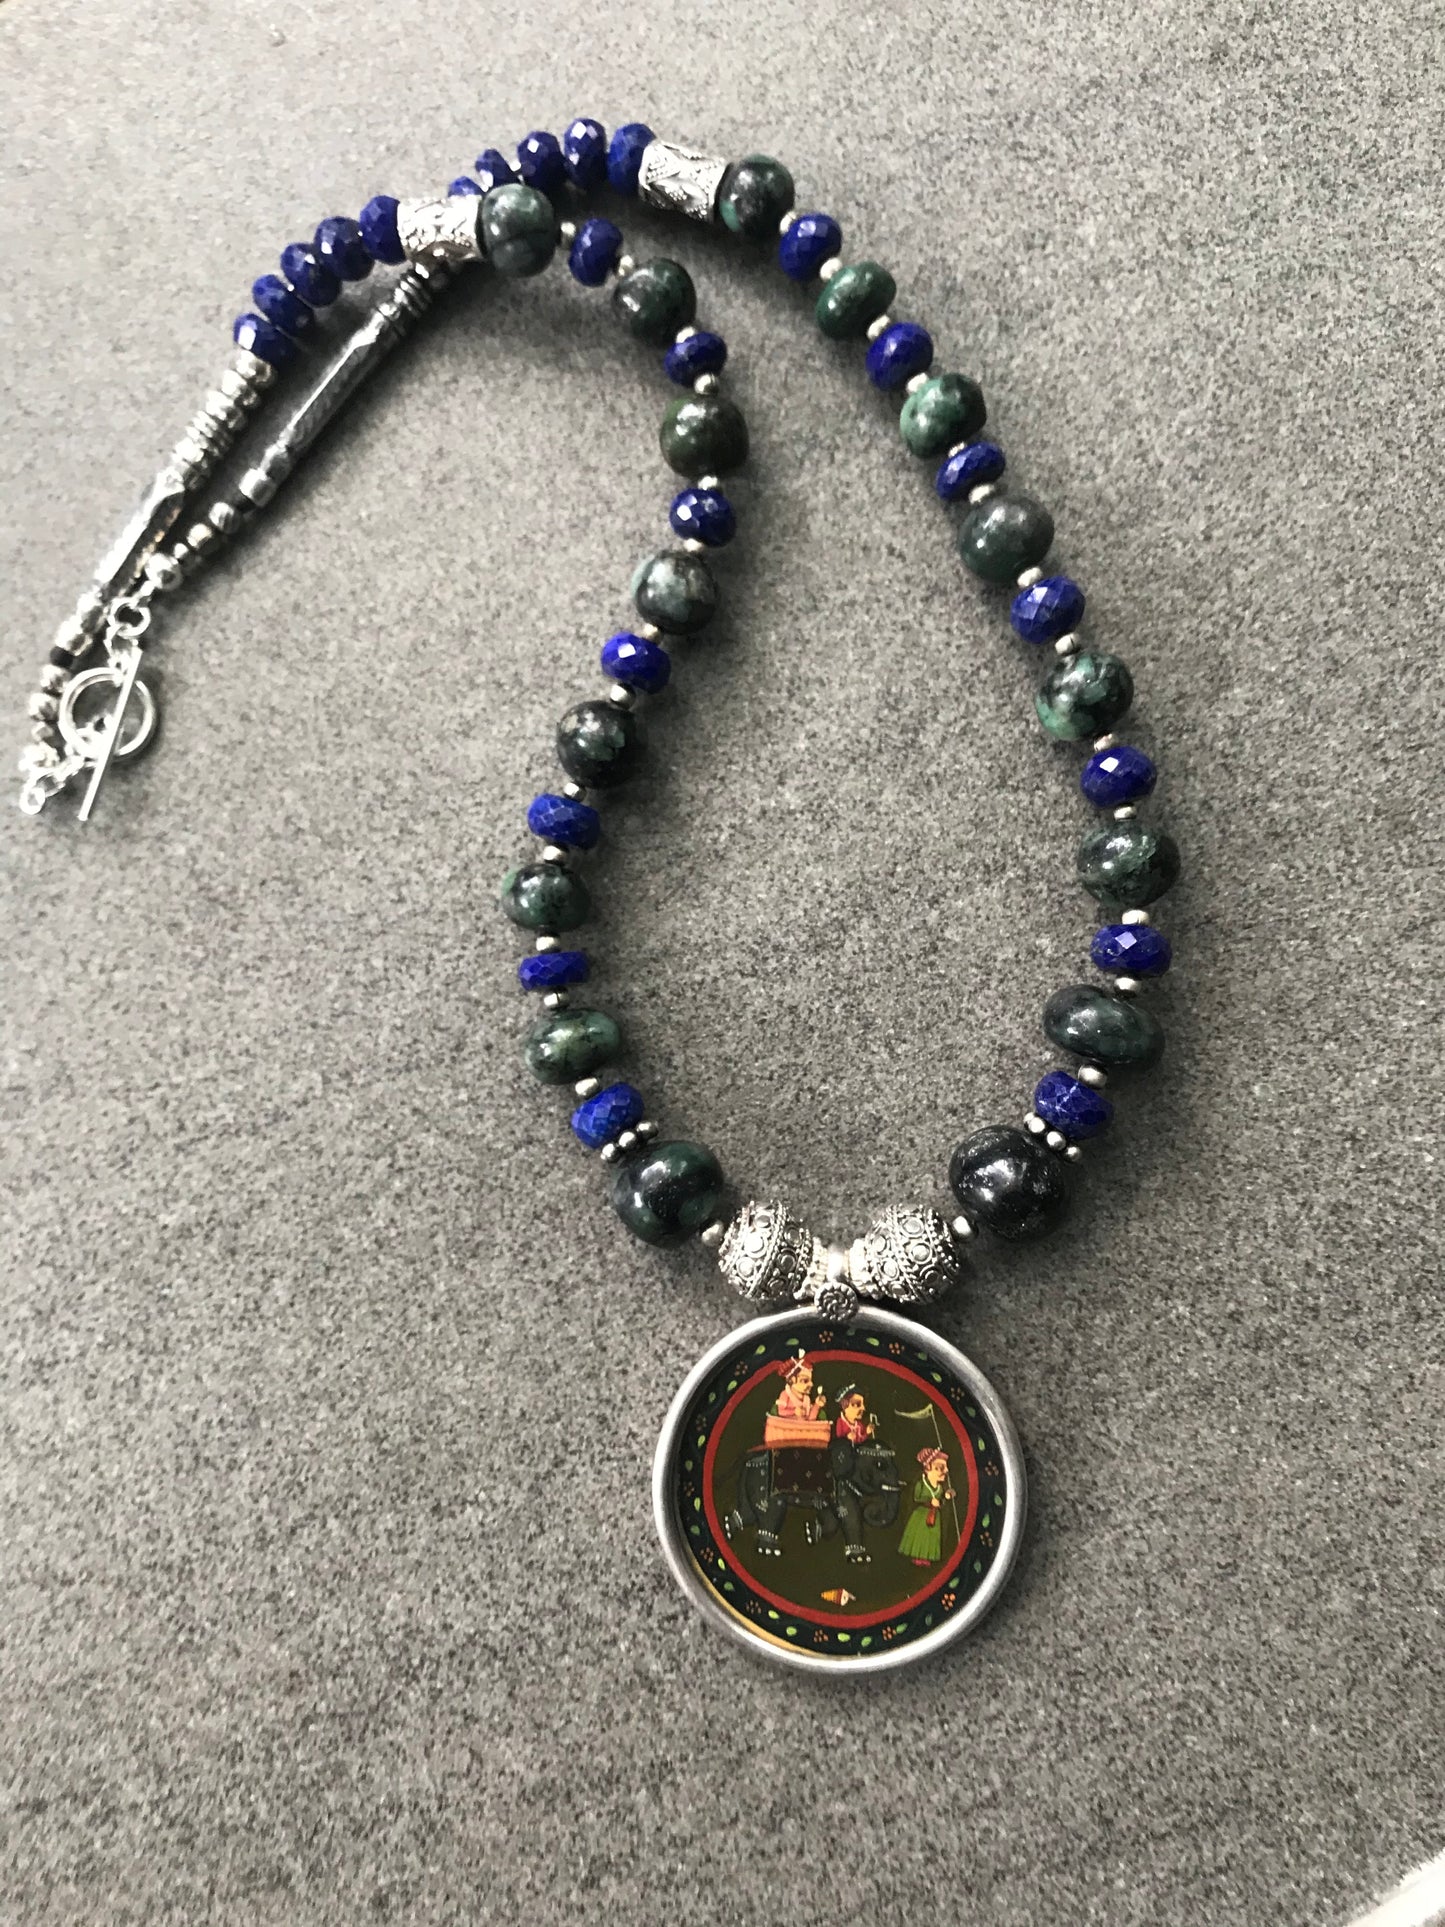 Indian miniature pendant necklace